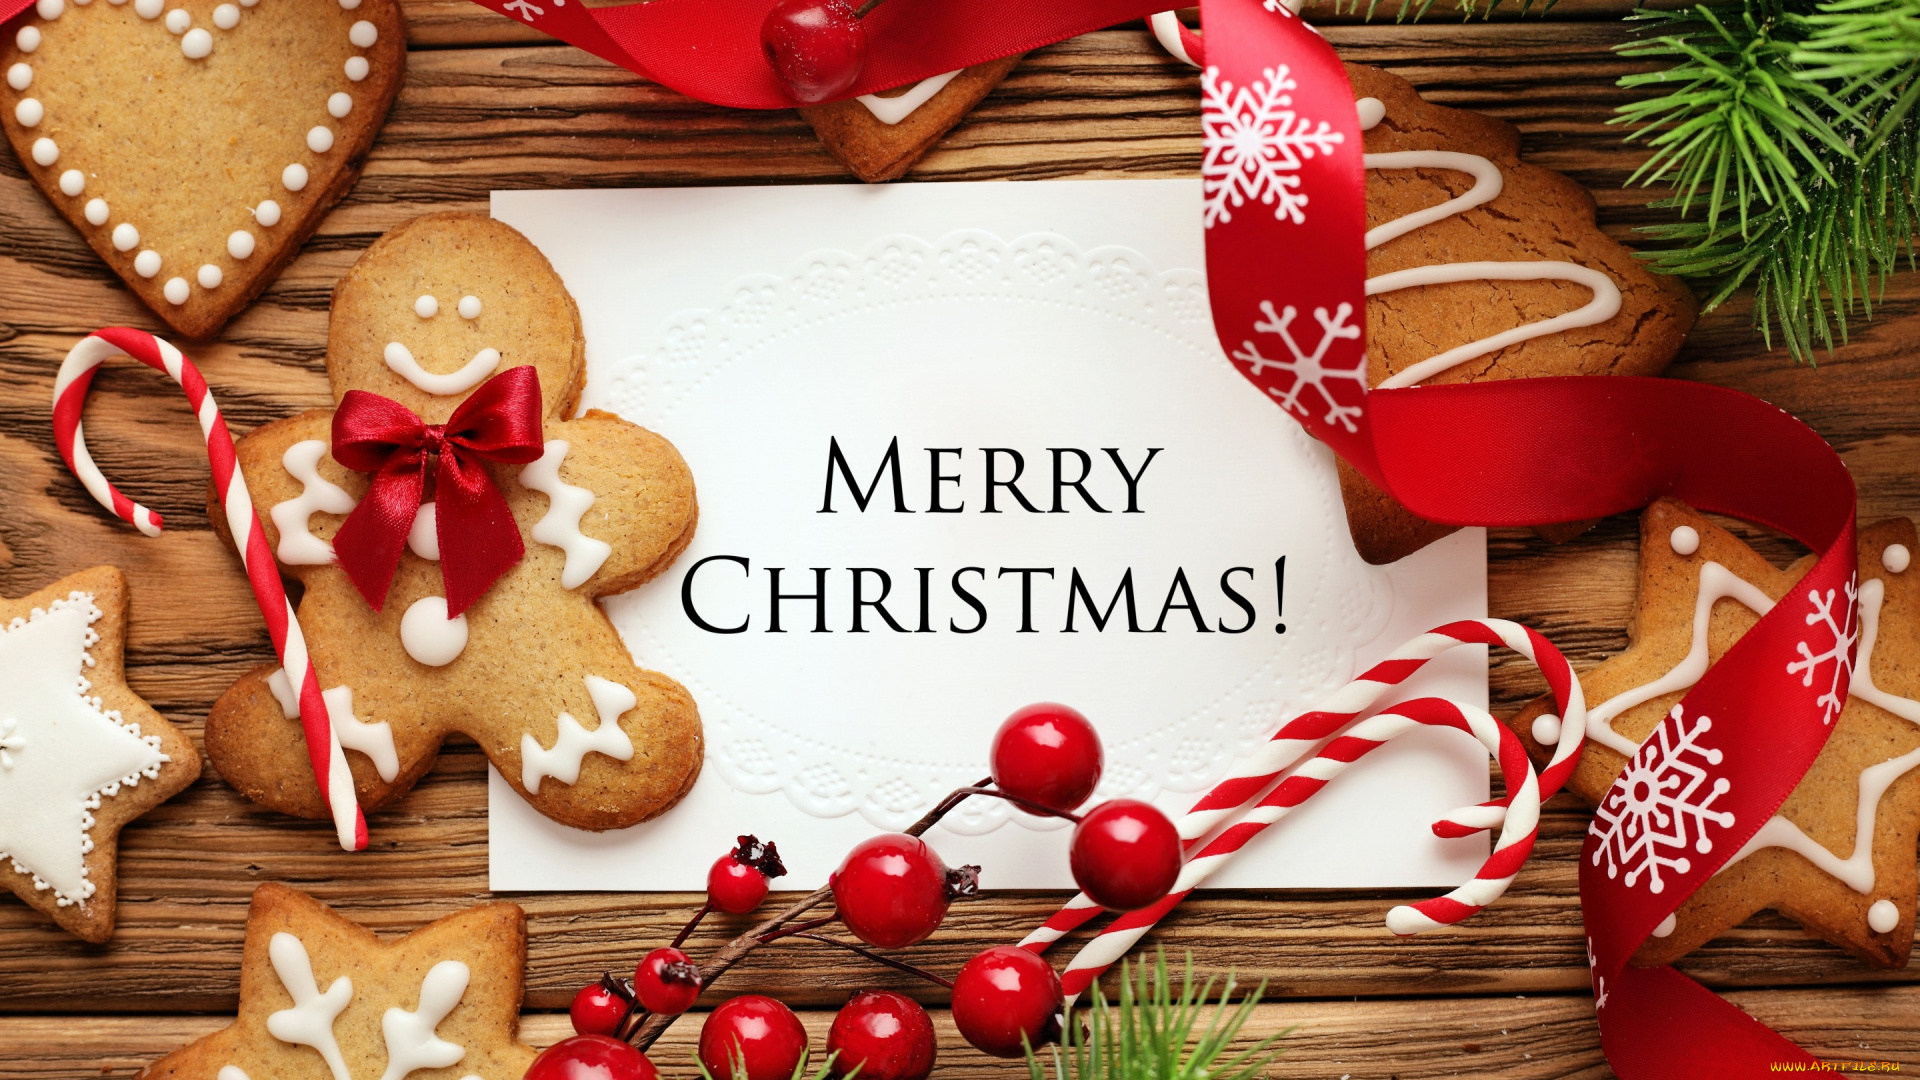 праздничные, угощения, печенье, новый, год, рождество, christmas, gingerbread, сладкое, merry, cookies, decoration, xmas, выпечка, глазурь